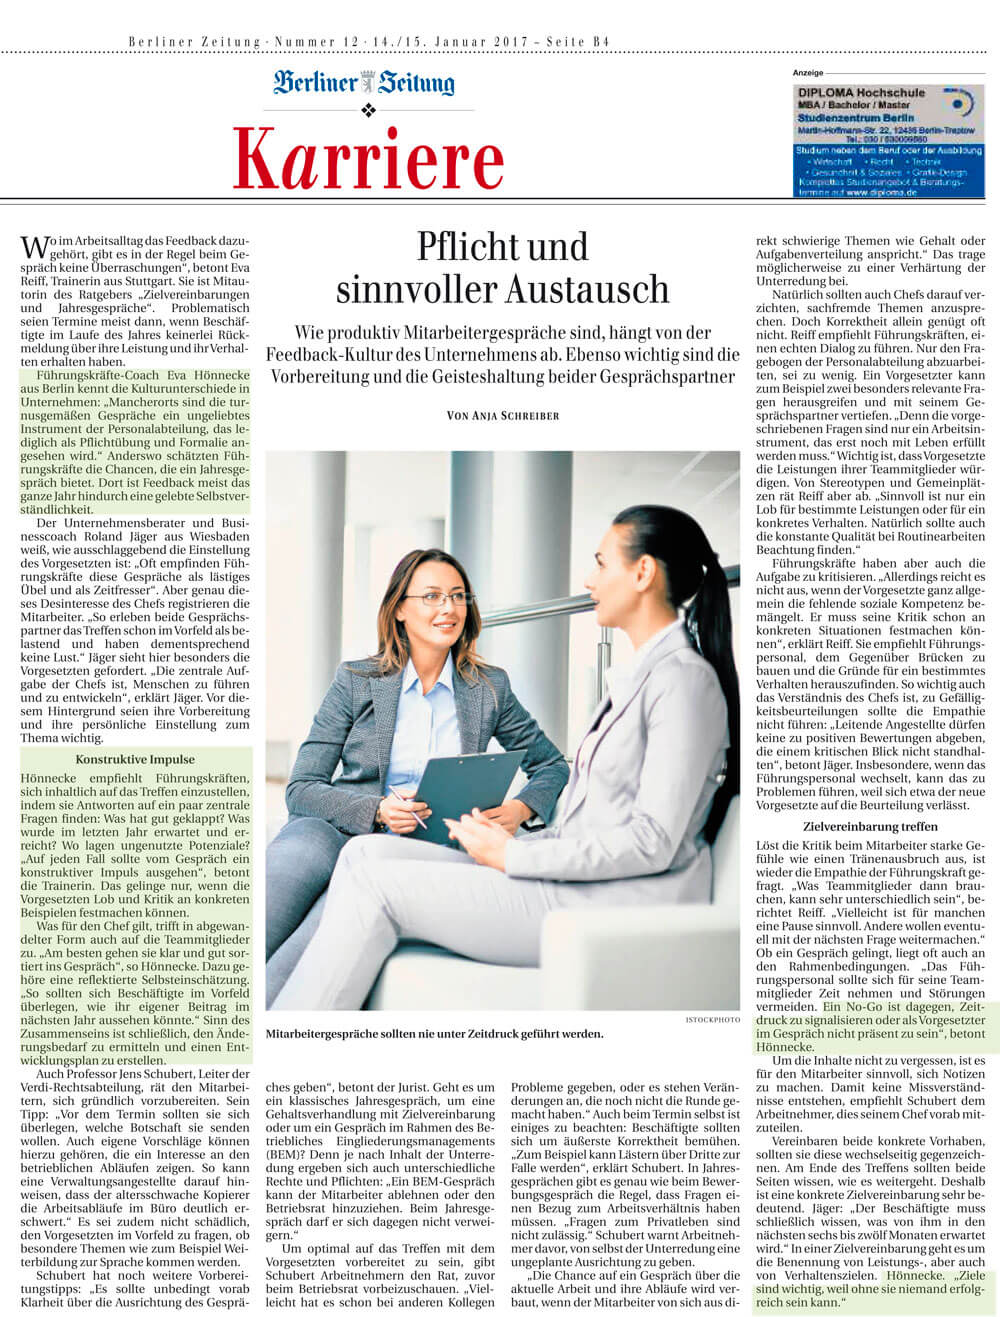 "Pflicht und sinnvoller Austausch" Artikel von Anja Schreiber Berliner Zeitung 14./15.01.2017 mit Expertenbeträgen von Eva Hönnecke